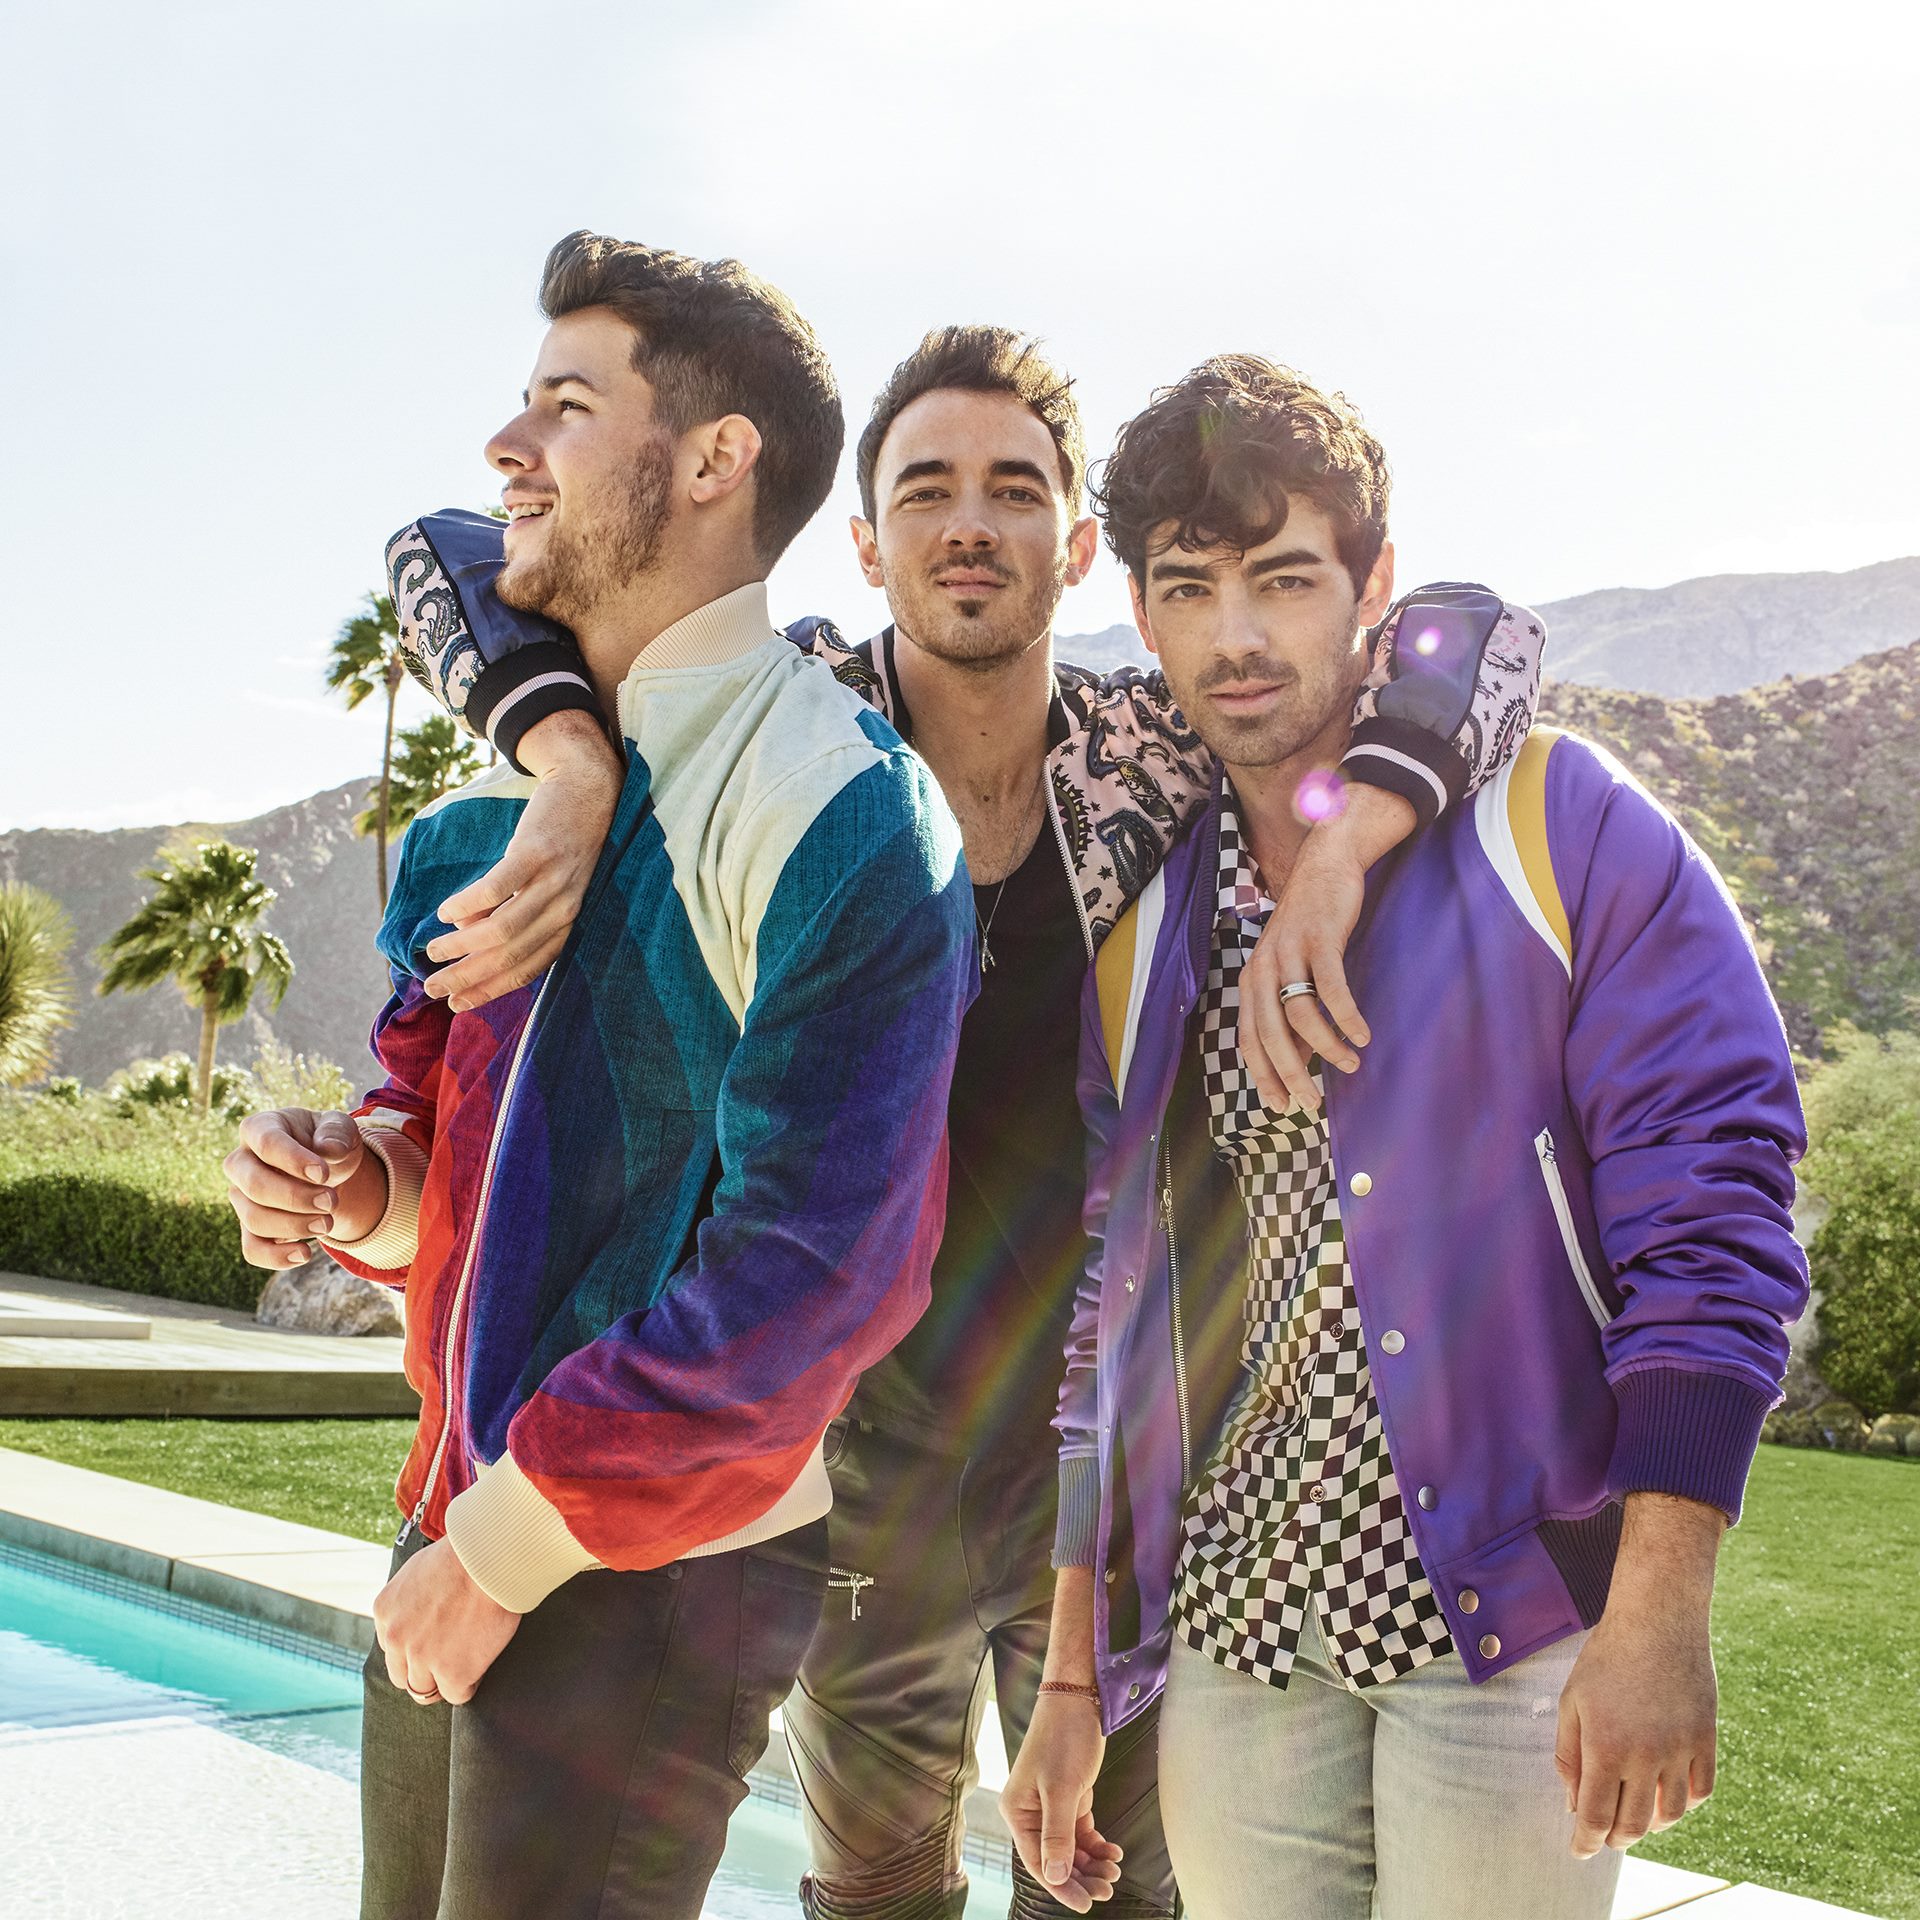 Documentar nou Jonas Brothers. Află când se lansează!